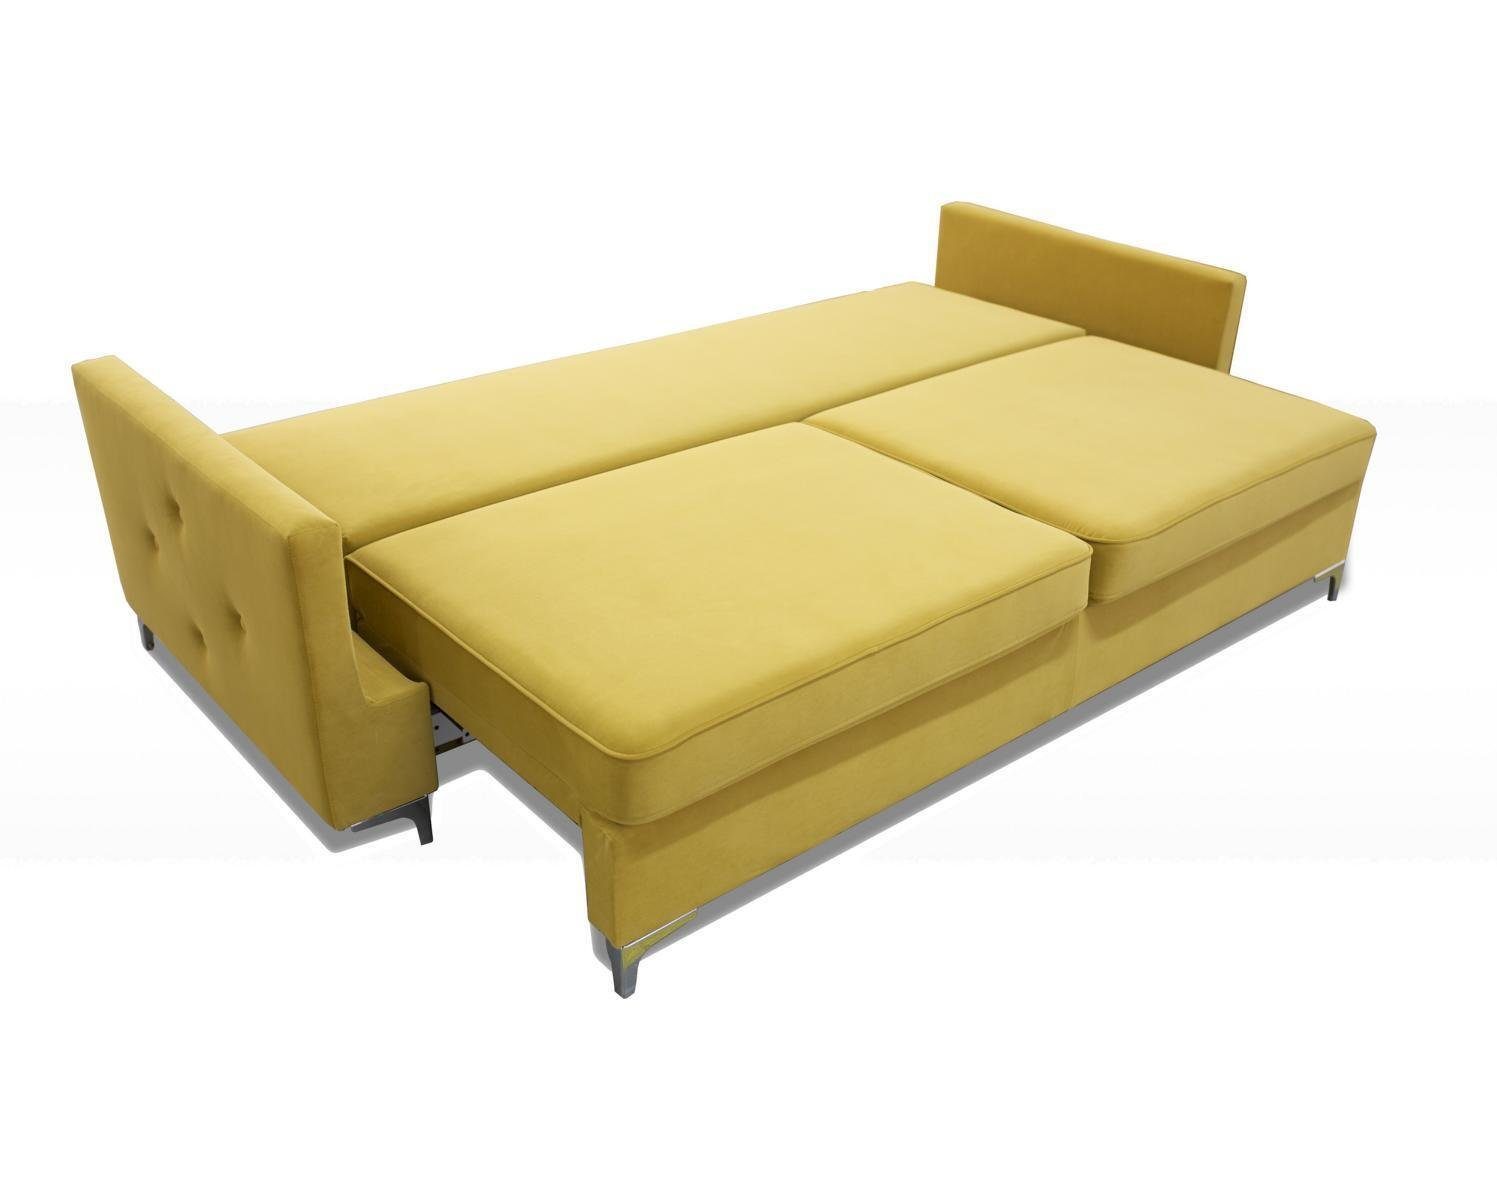 Blauer Dreisitzer Made Stoff Sofa Europe Möbel Polster in Neu, luxus Chesterfield JVmoebel 3-er Gelb